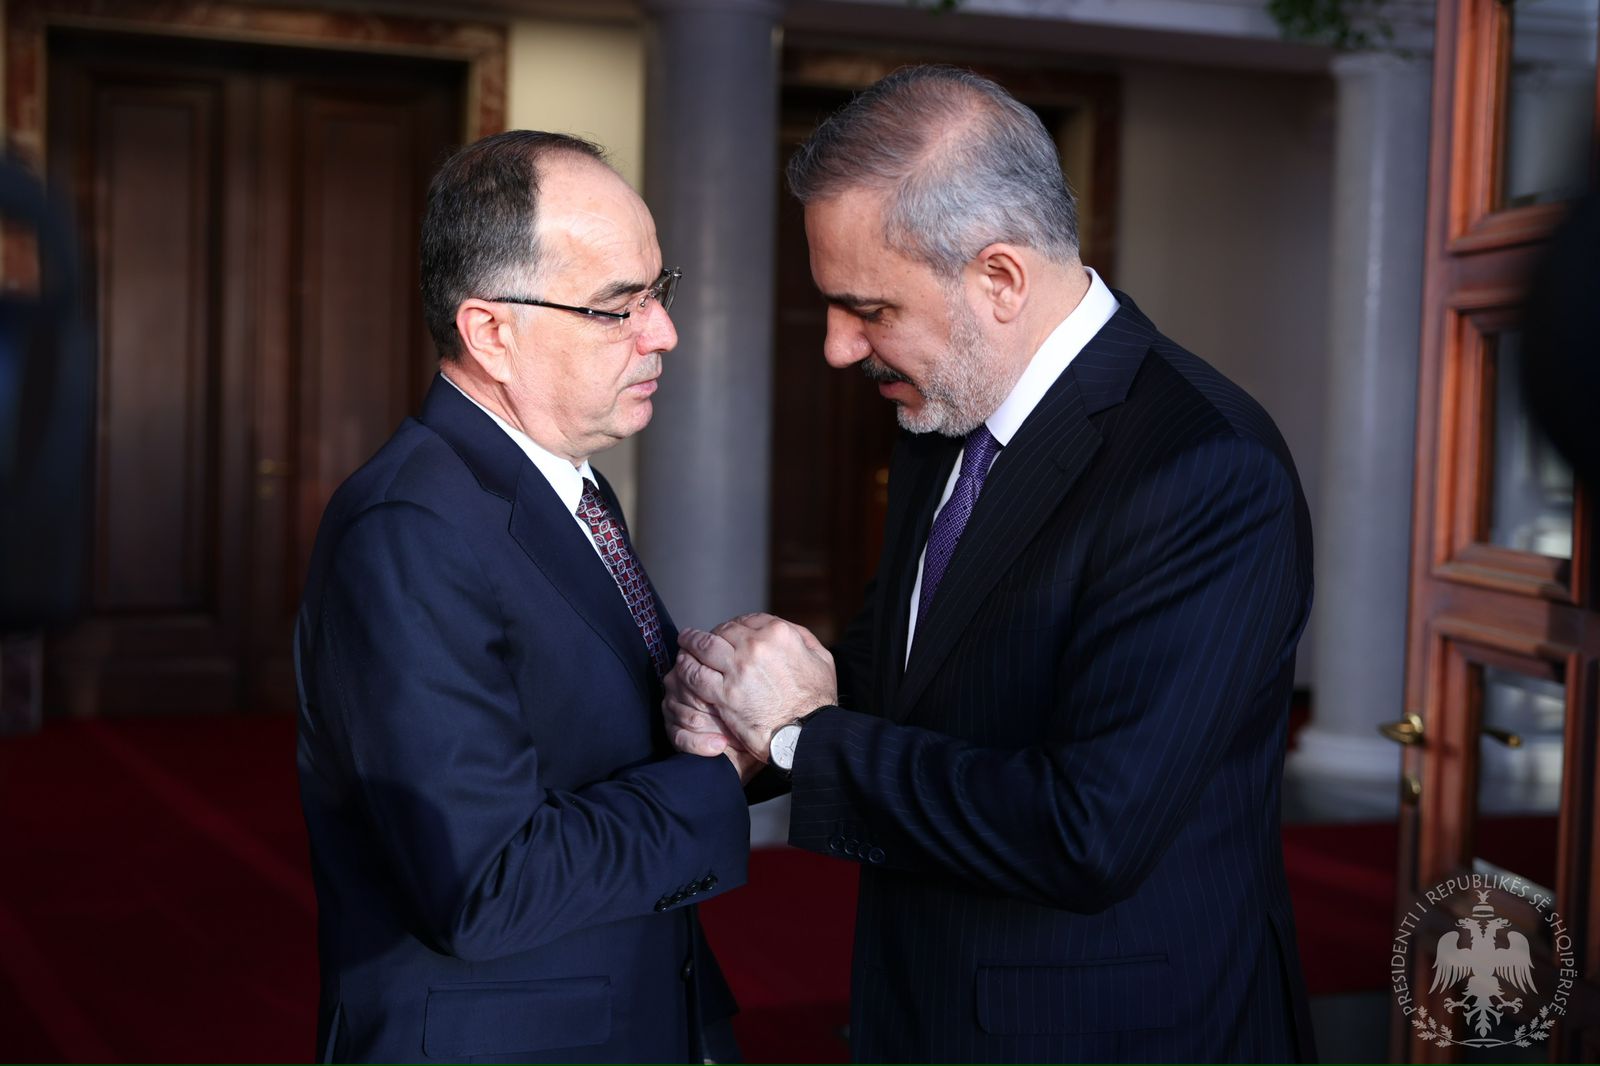 bashkepunimi shqiptaro turk i frytshem presidenti begaj takohet me ministrin e jashtem te turqise vleresime per mbeshtetjen ndaj kosoves